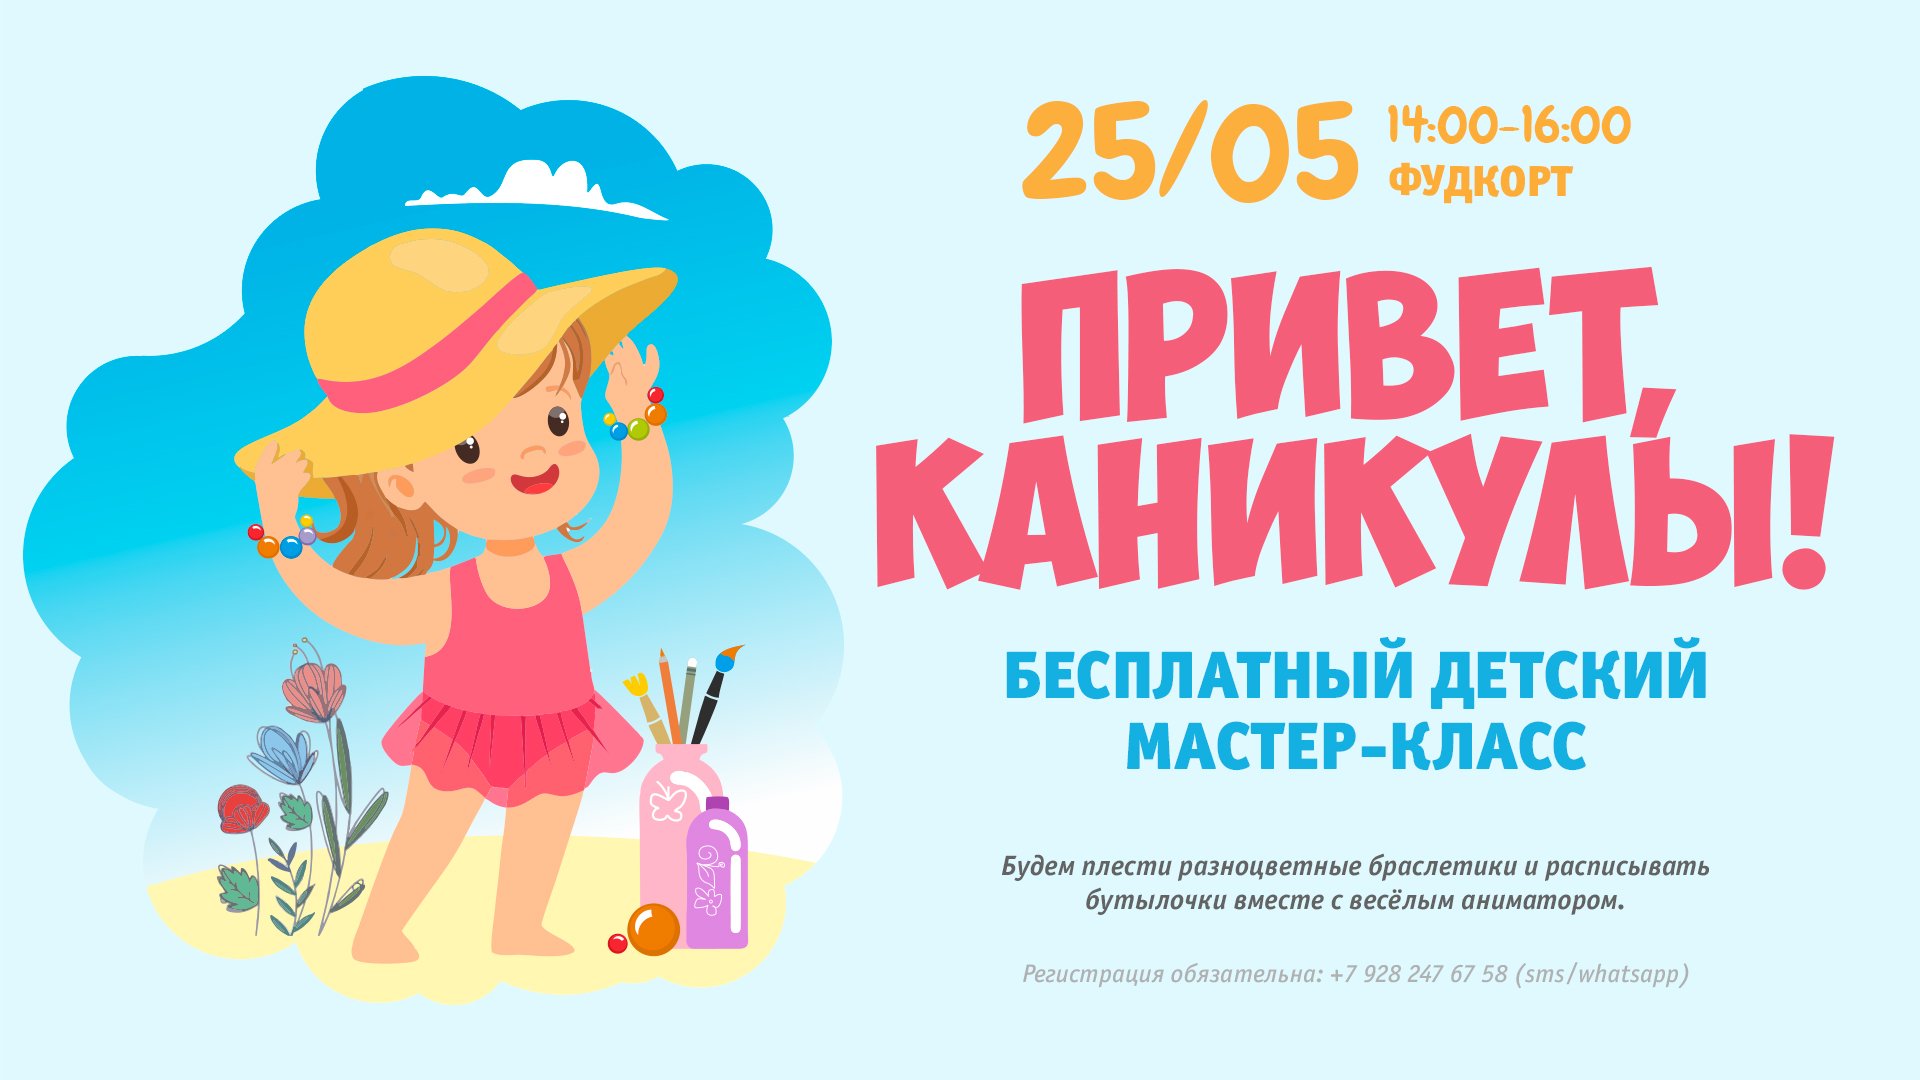 25.05 - Детский мастер-класс по росписи бутылочек и плетению браслетиков